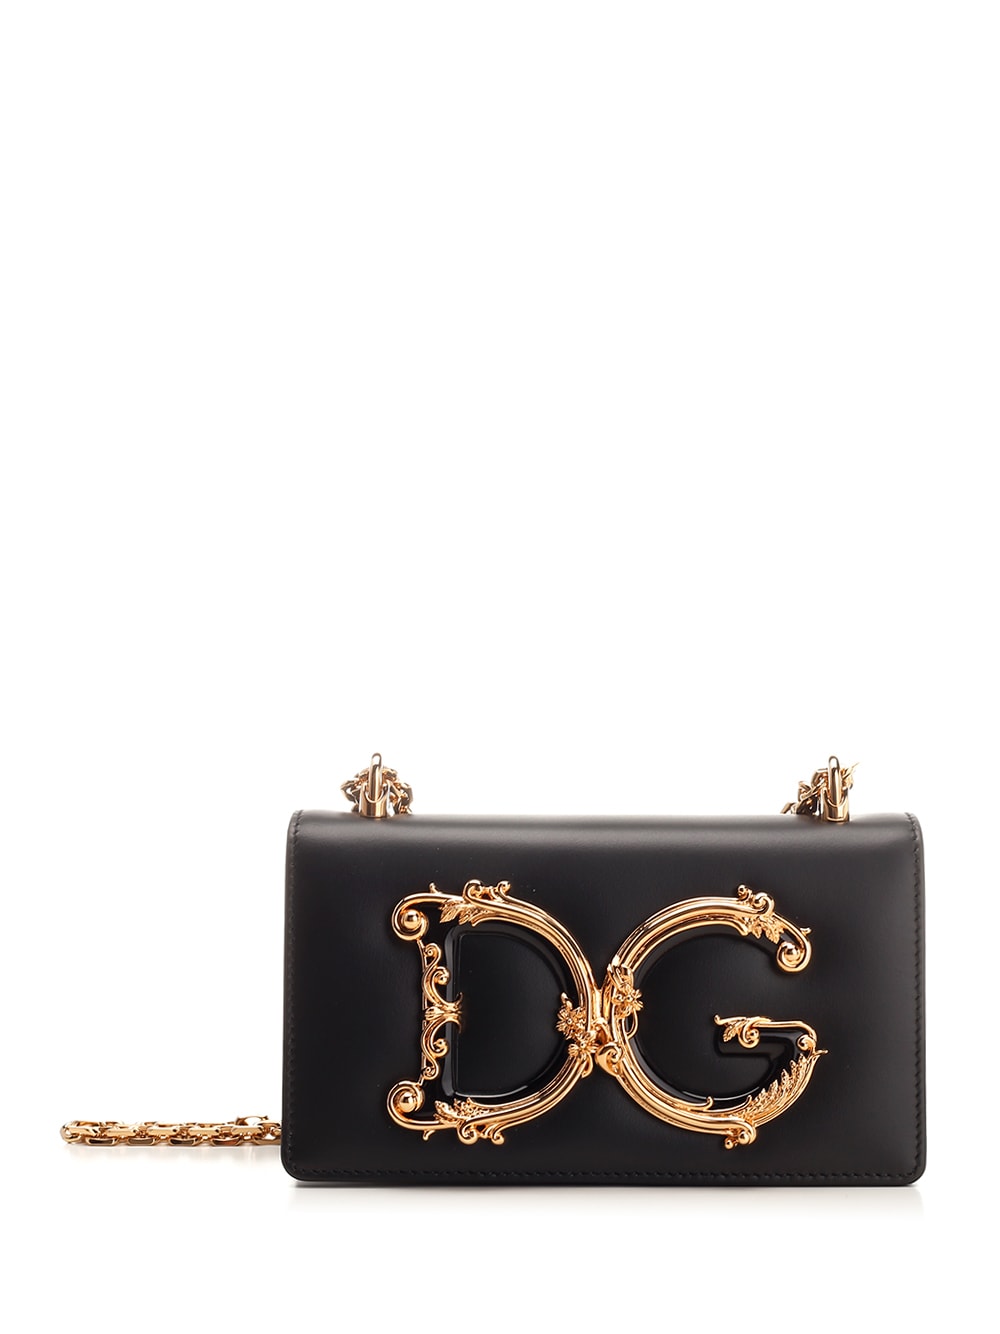 Dolce & Gabbana Black Dg Girls Shoulder Bag